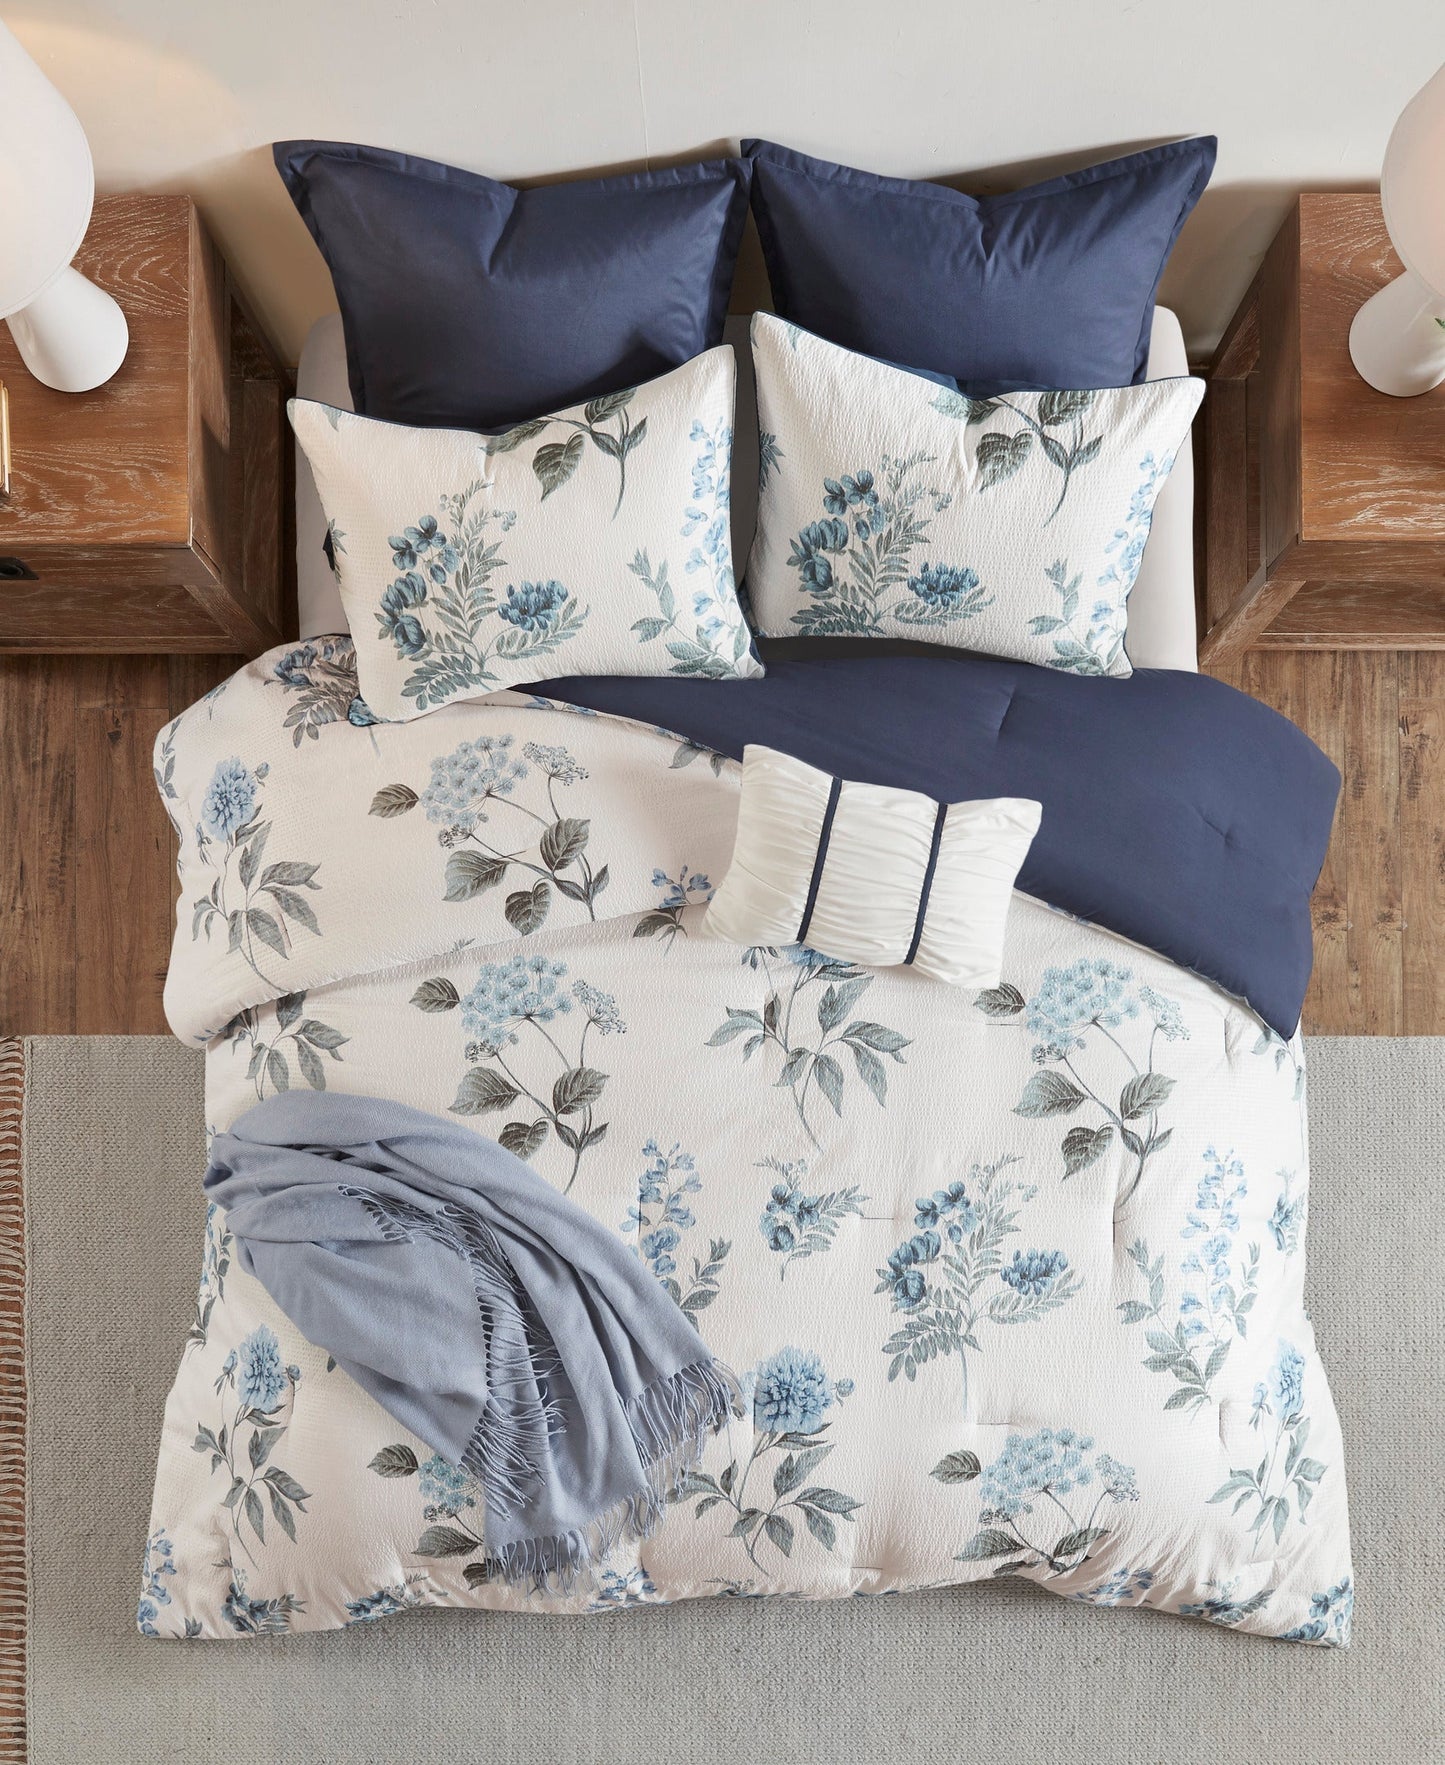 Benita 7 Piece Printed Seersucker Comforter Set with Throw Blanket